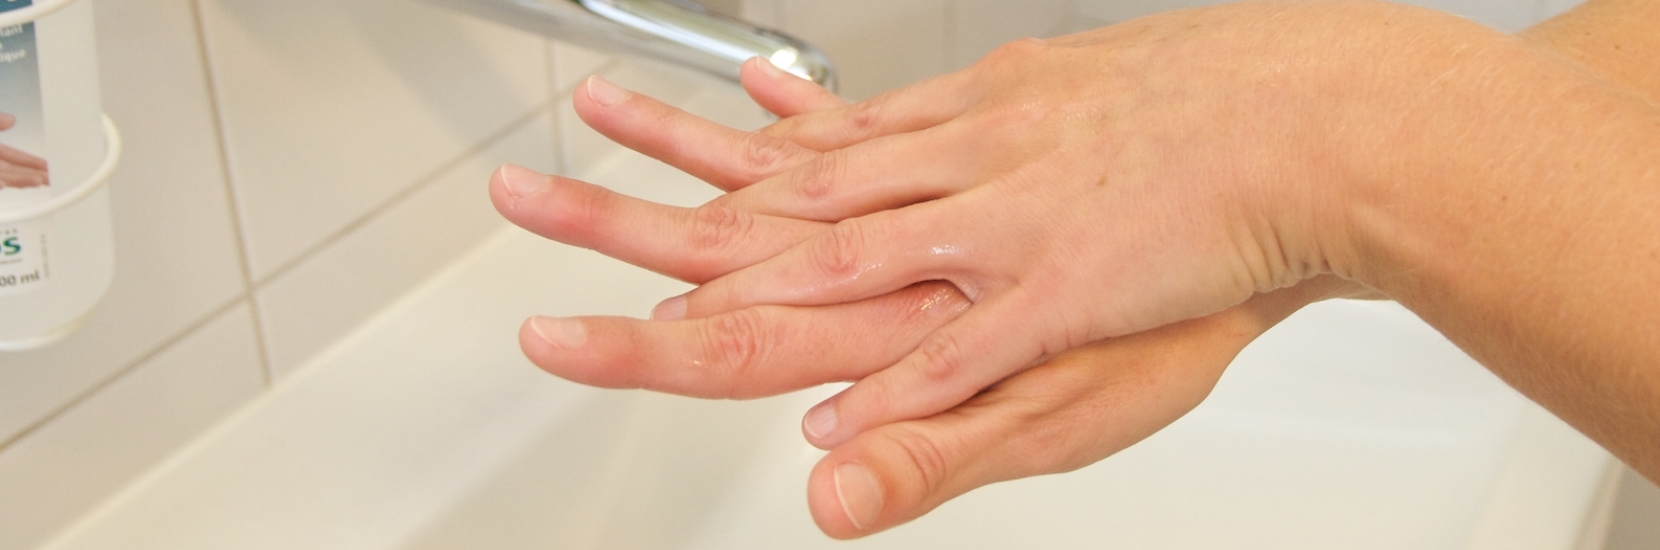 5 mai: Journée mondiale de l'hygiène des mains